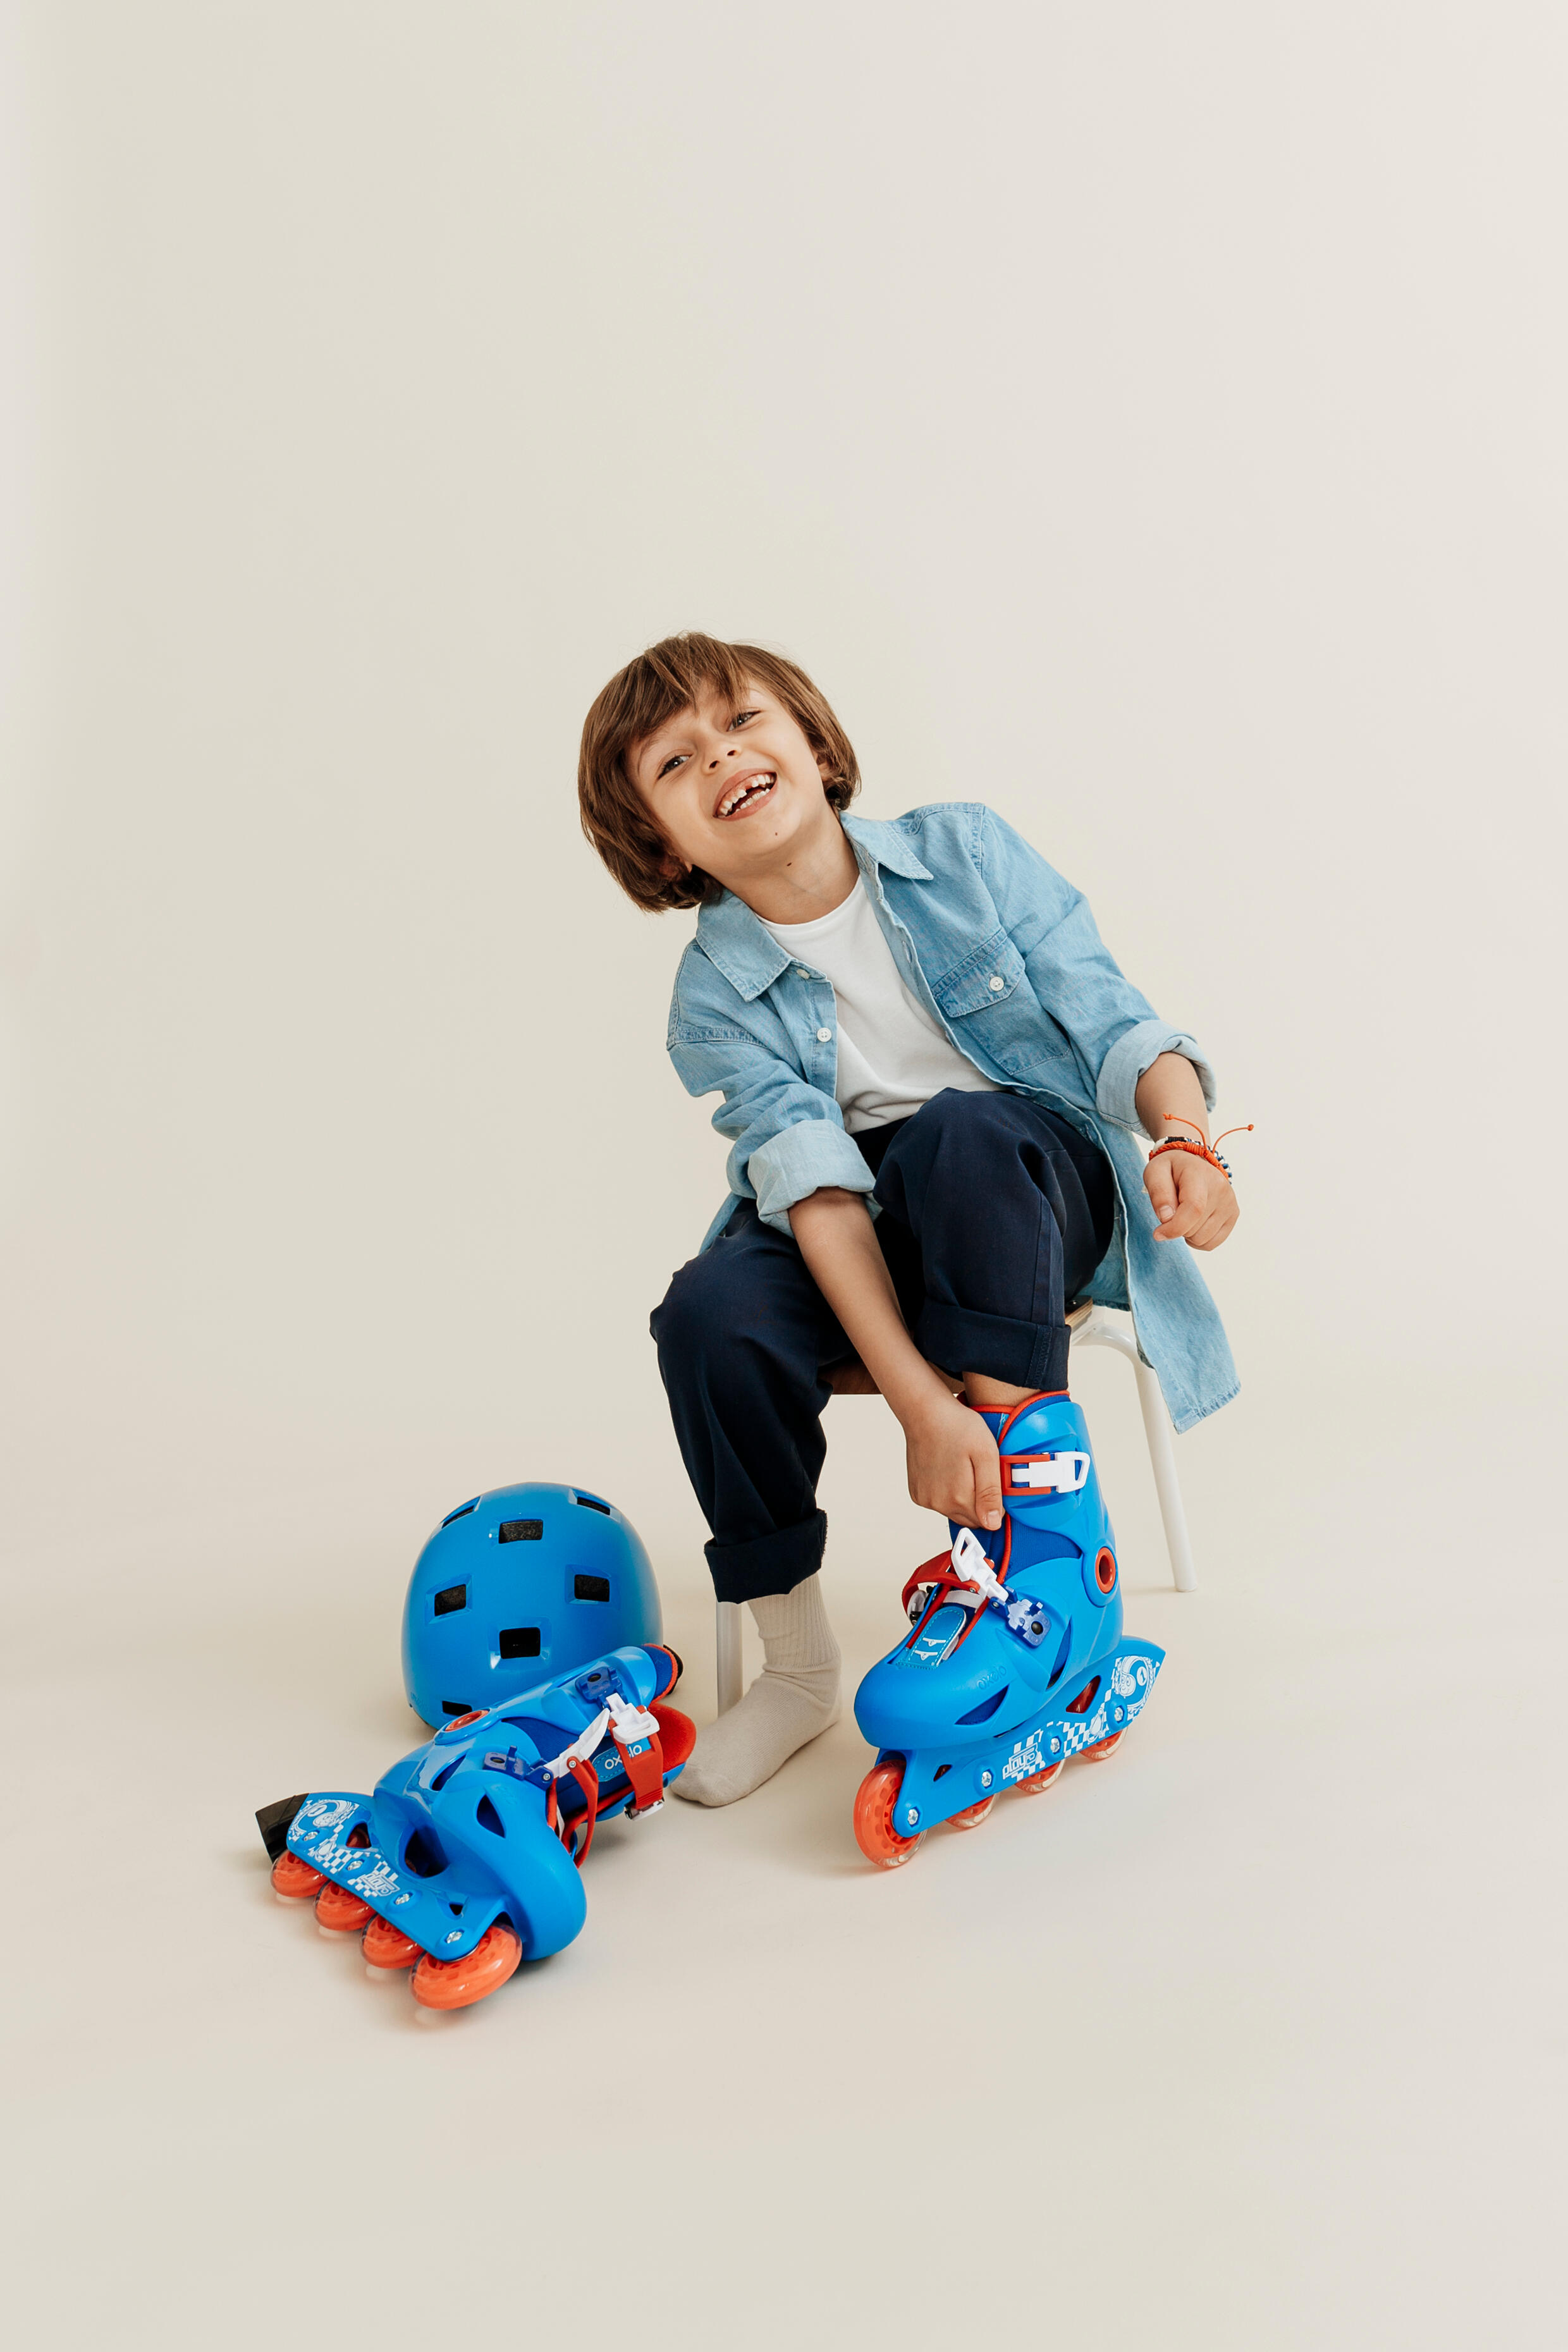 Casque pour patin, skateboard et trottinette enfant - B 100 bleu - OXELO